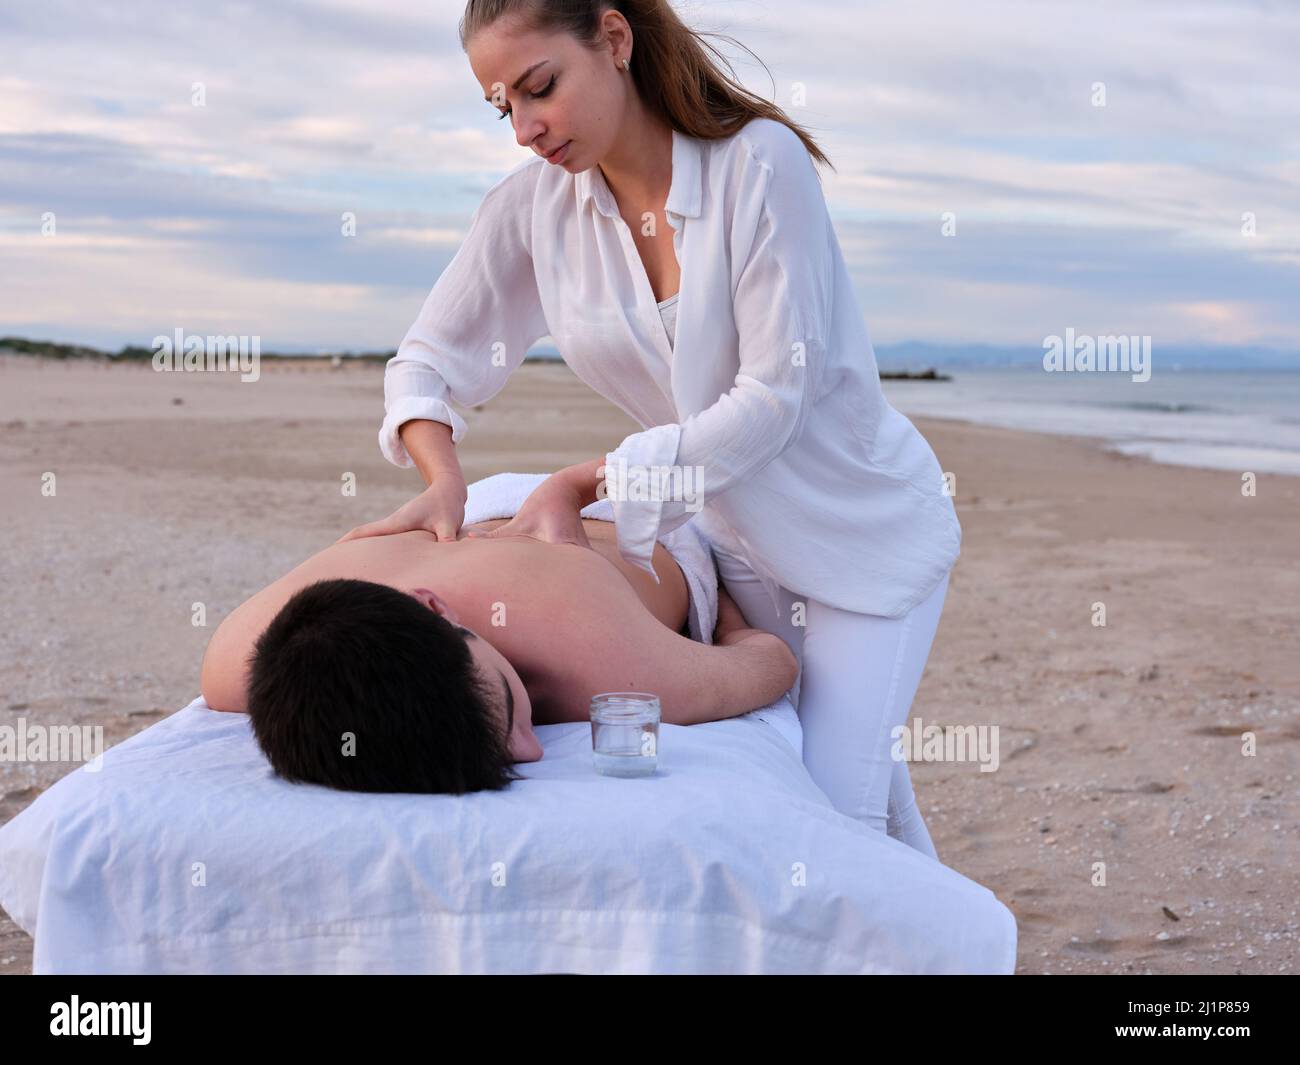 Eine junge Chiromassage-Therapeutin, die einem jungen Mann auf einem Massageliege am Strand von Valencia eine Massage auf den Rücken gibt. Stockfoto